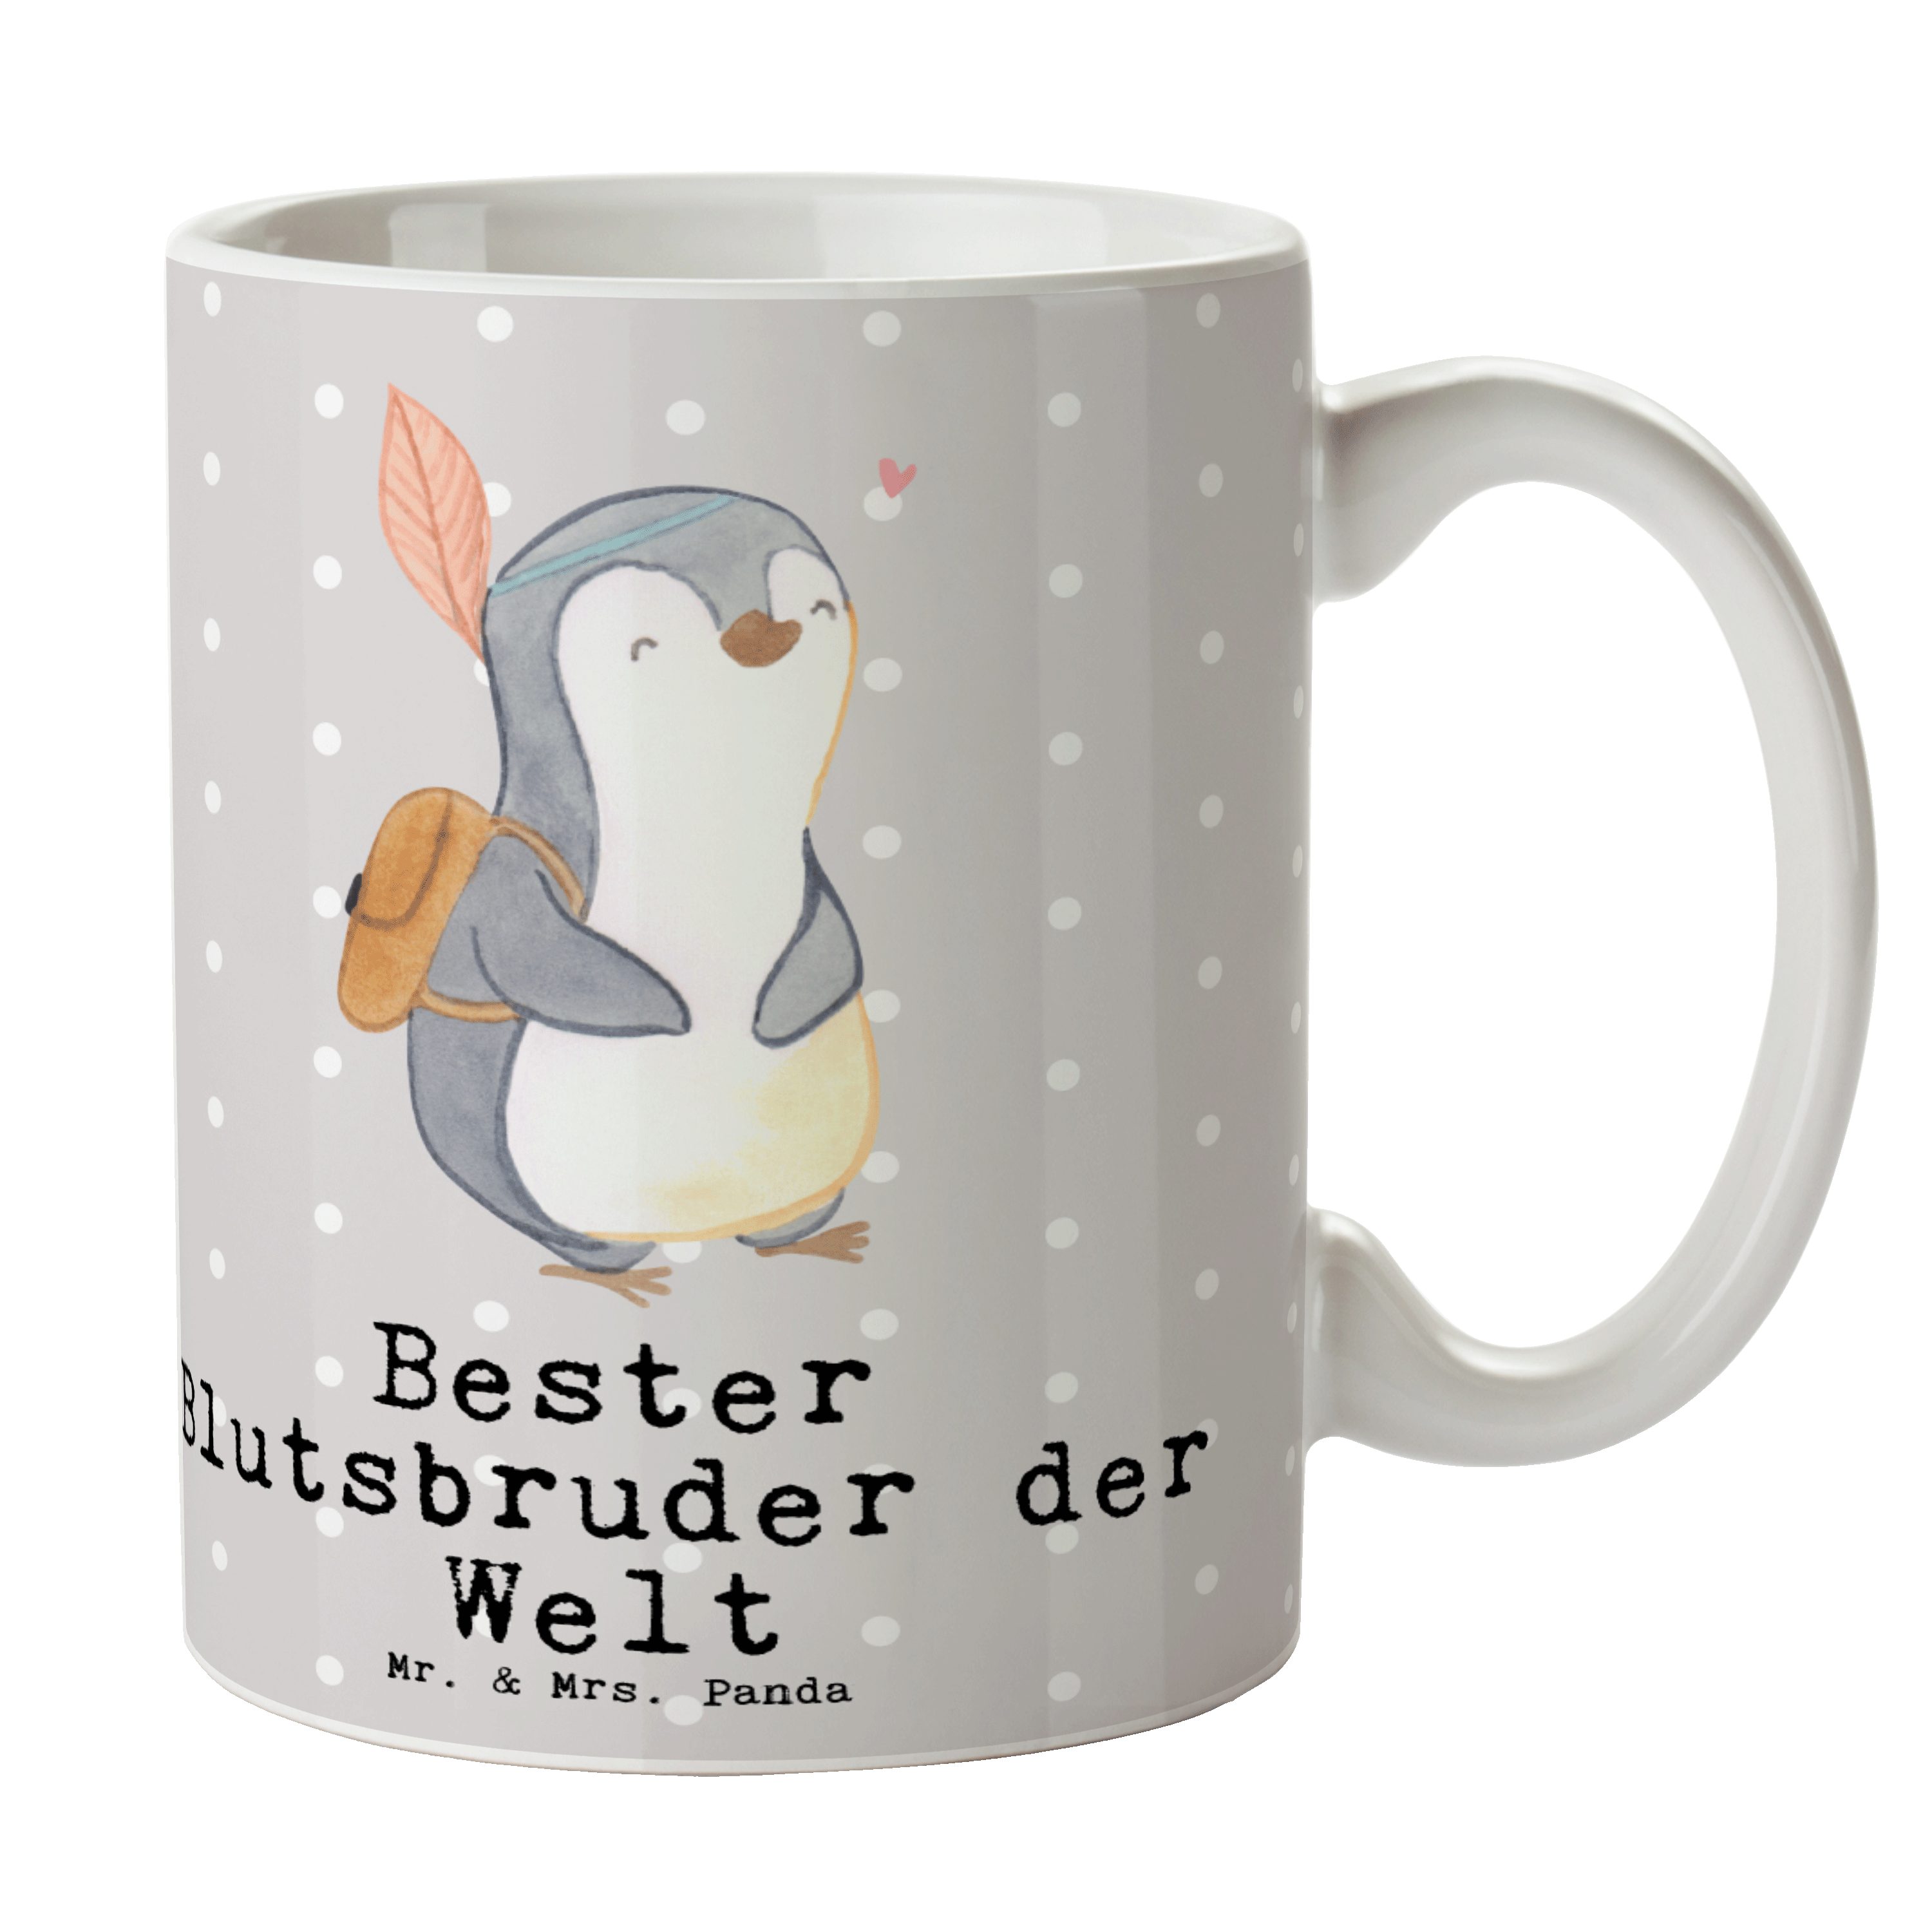 Mr. & Mrs. Panda Tasse Grau - Geschw, Keramik Geschenk, Blutsbruder Welt Pinguin Bester - Pastell der